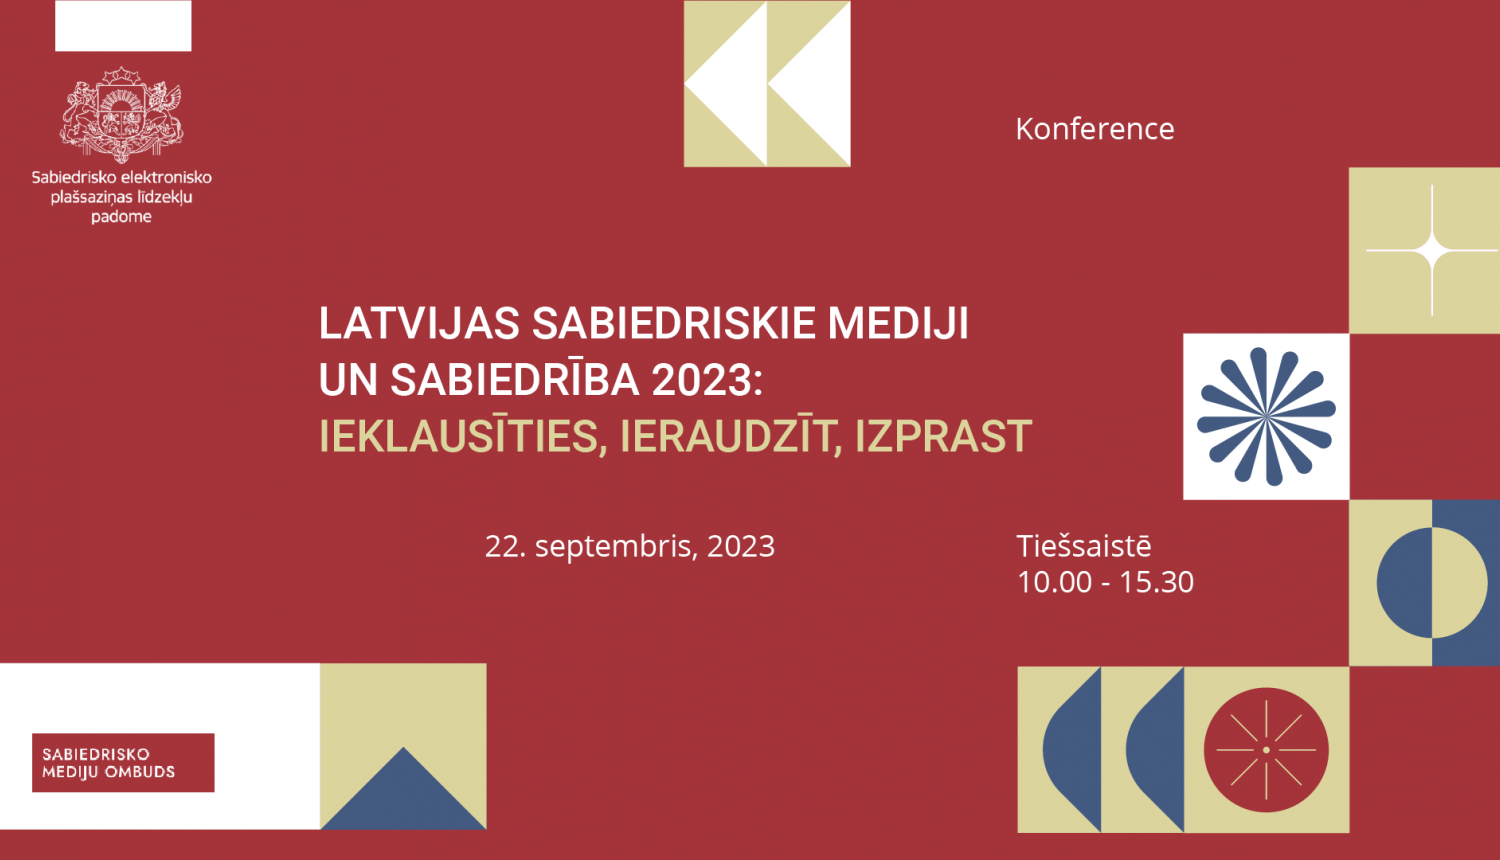 Konference sabiedrisko mediju jomā “Latvijas sabiedriskie mediji un sabiedrība 2023: ieklausīties, ieraudzīt, izprast”!  